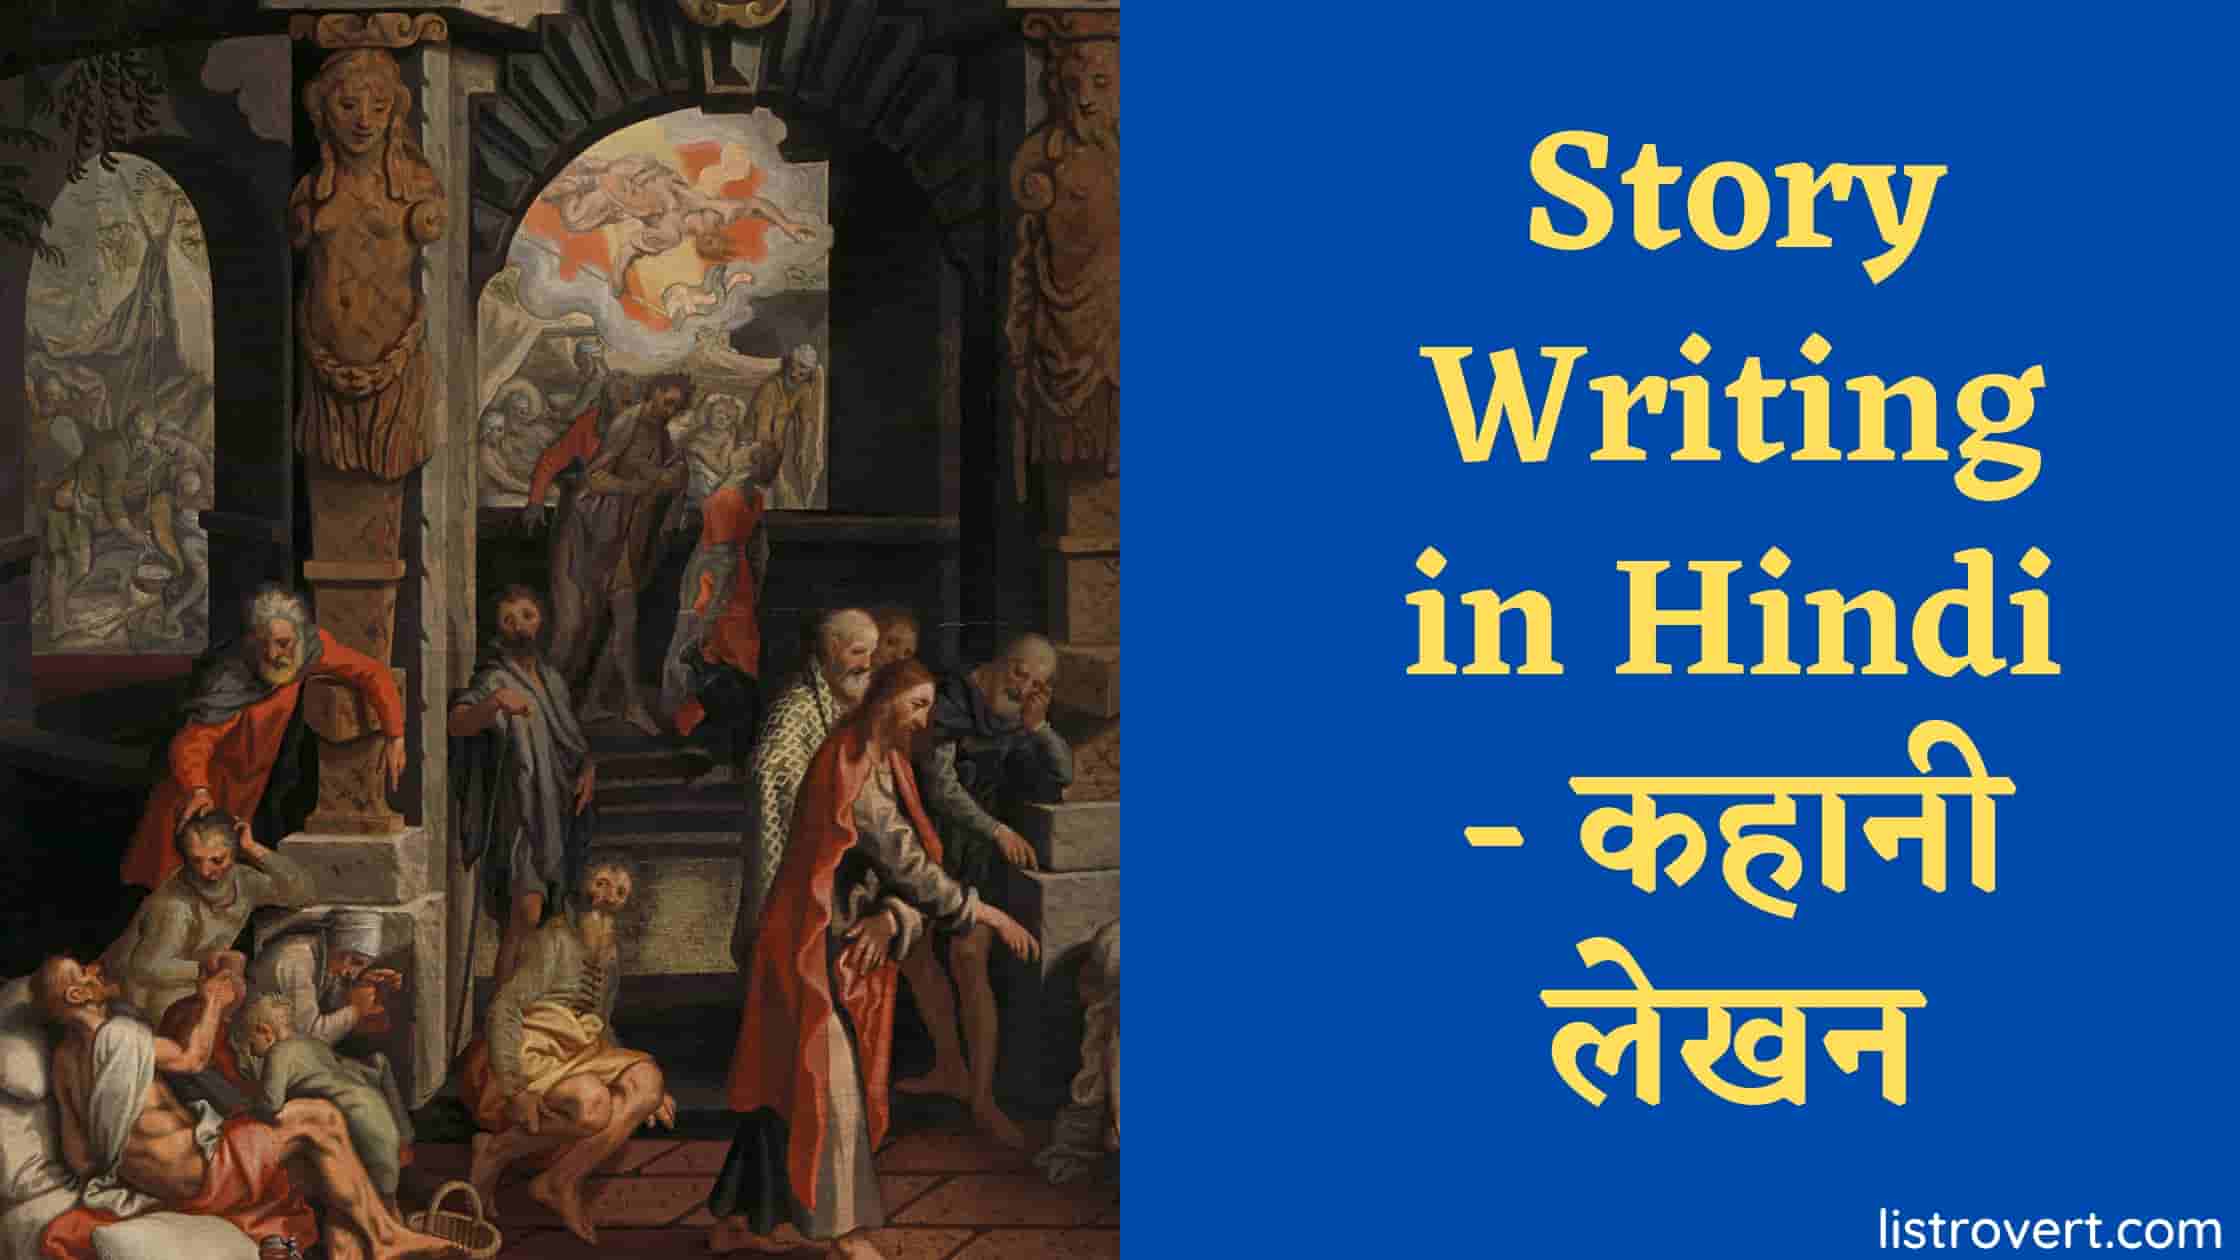 Story Writing in Hindi